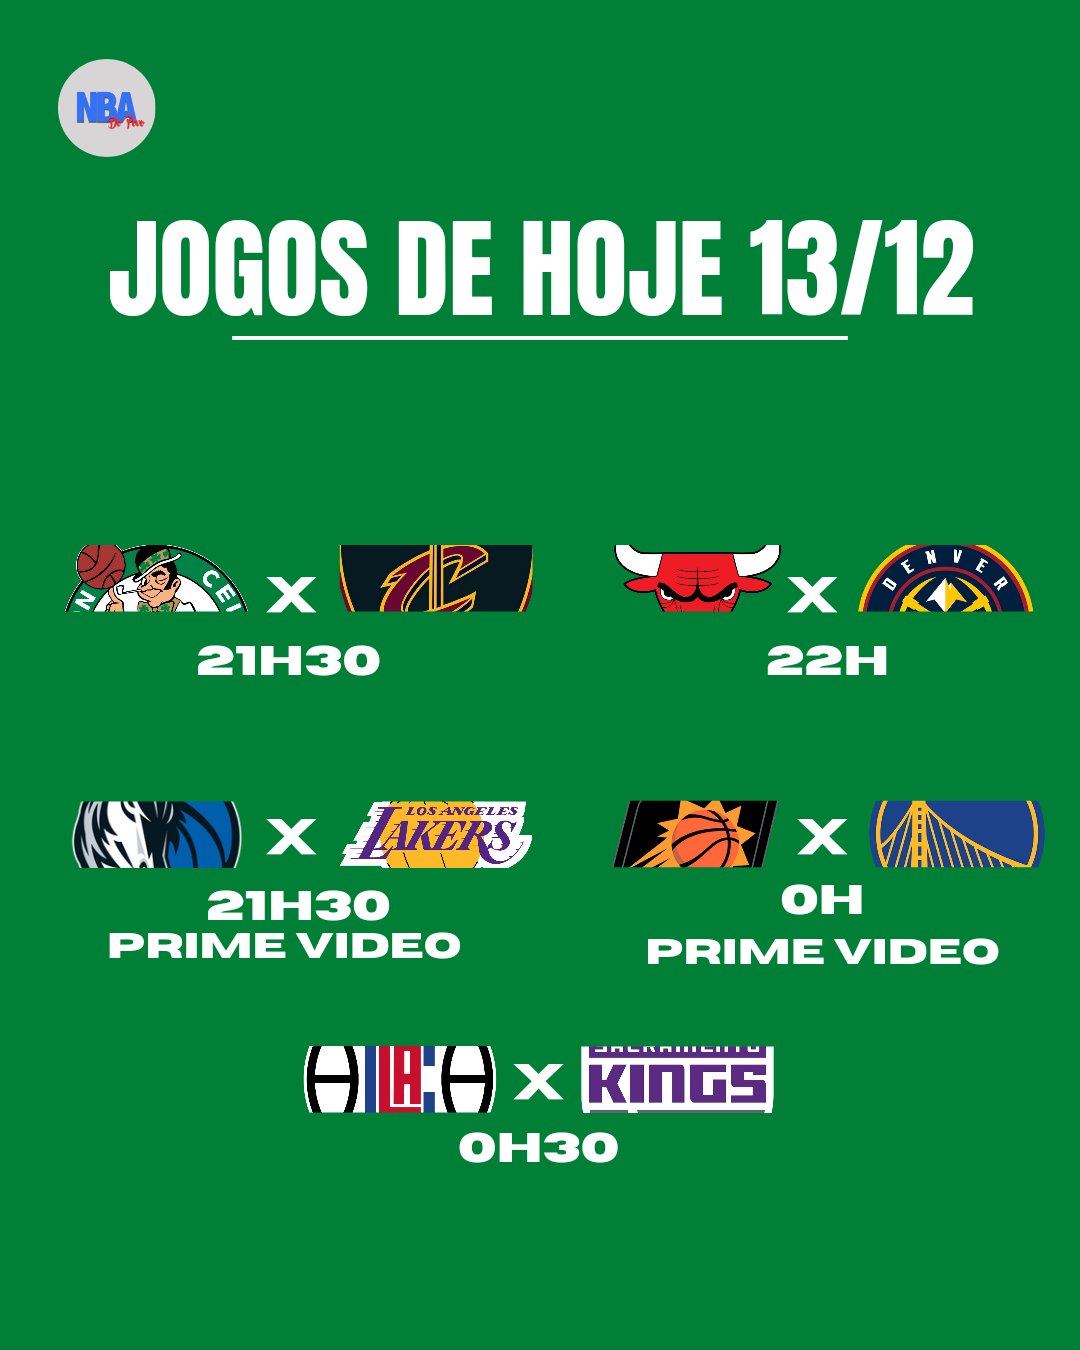 Prime Video transmitirá jogos da NBA no Brasil; saiba mais